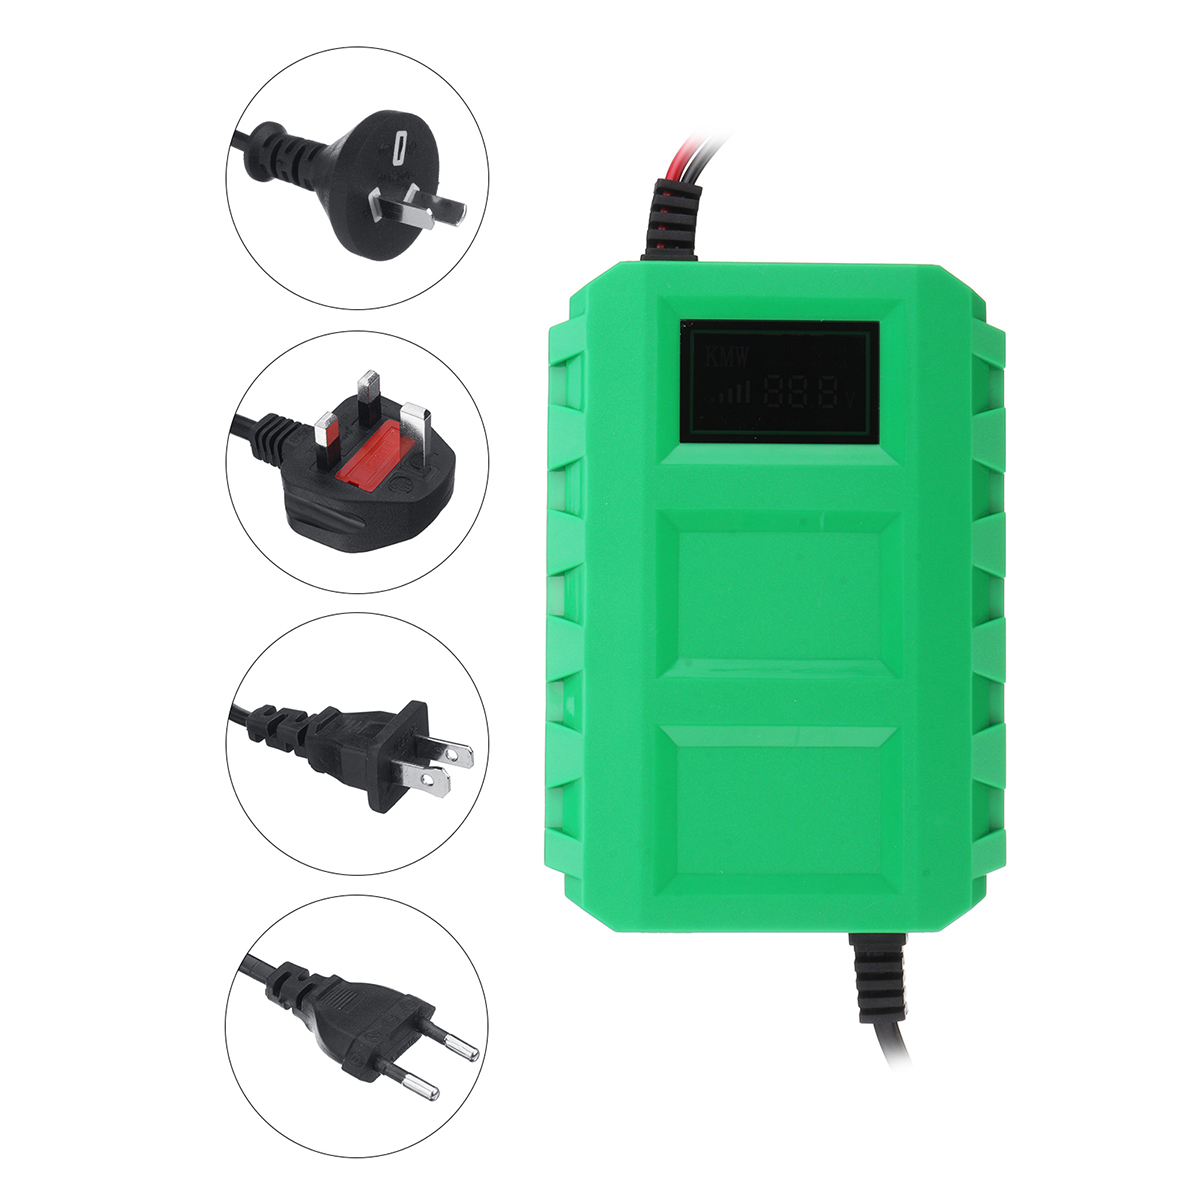 

12V 20A Lead Acid Батарея Зарядное устройство для электрических велосипедов Универсальное зарядное устройство Батарея